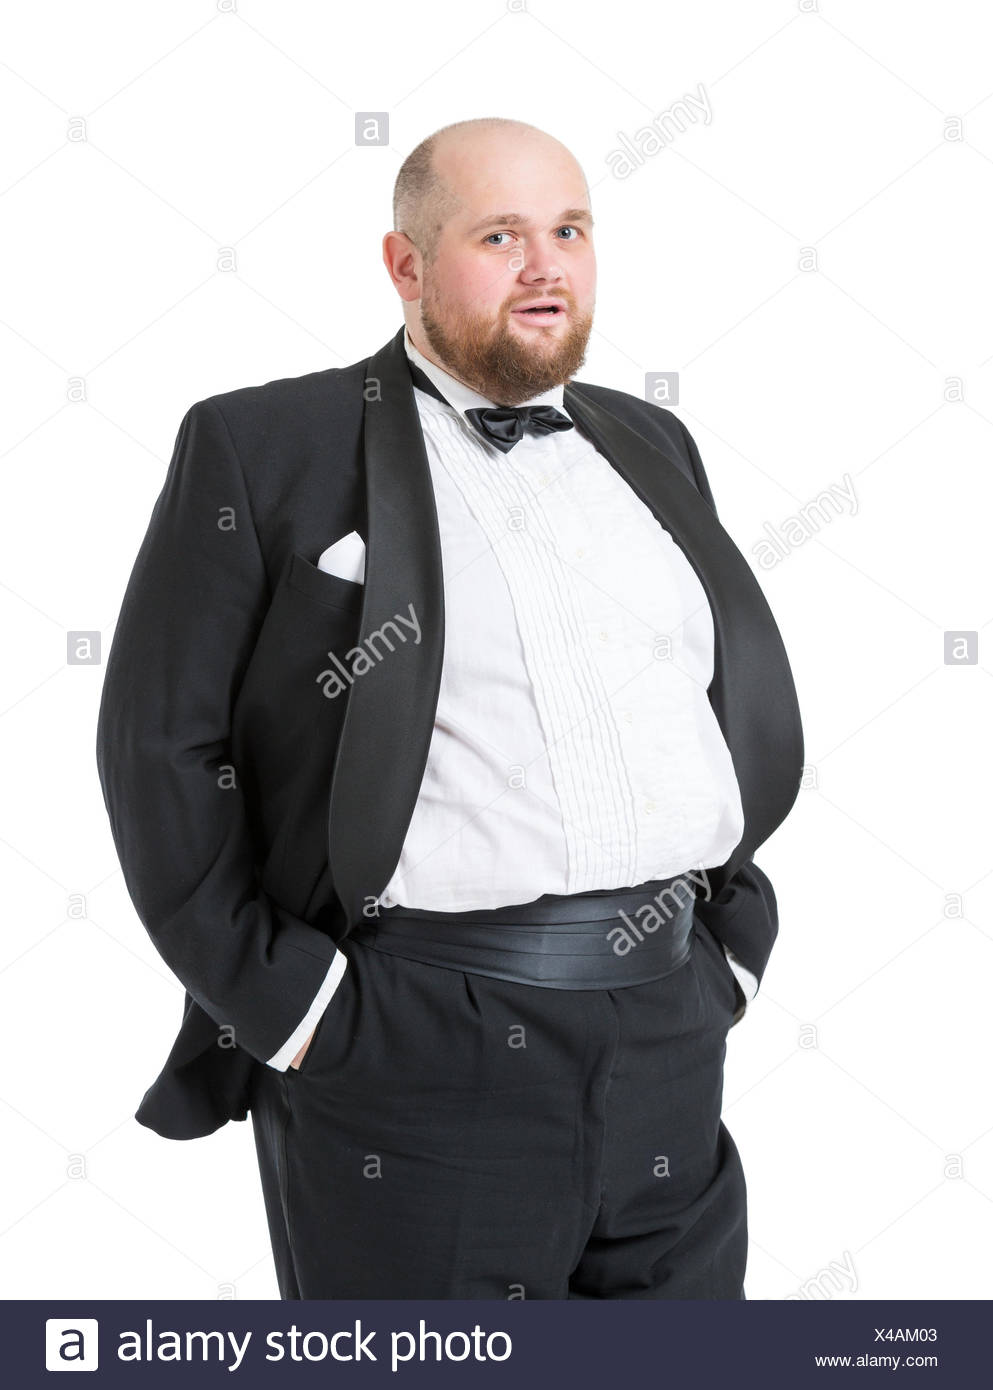 tuxedos for big guys,yasserchemicals.com